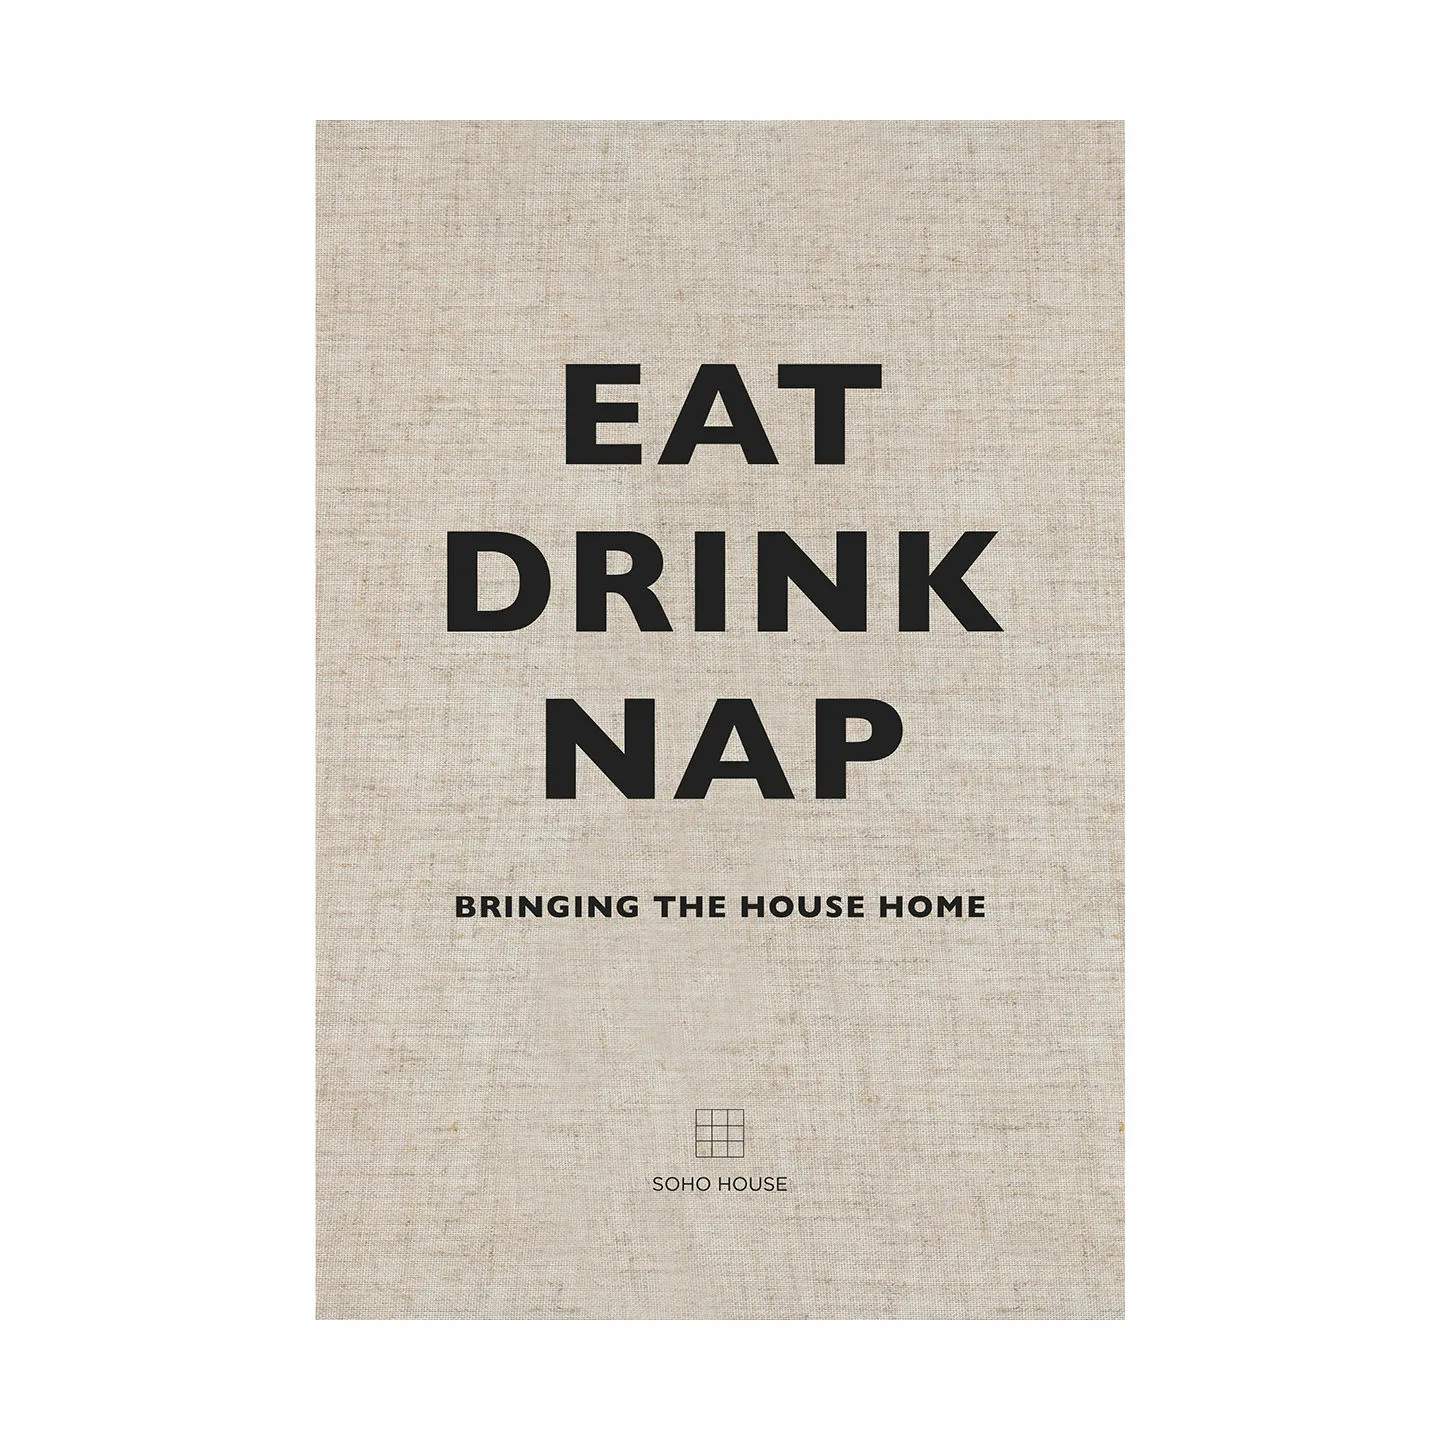 Eat Drink Nap øvrige bøger